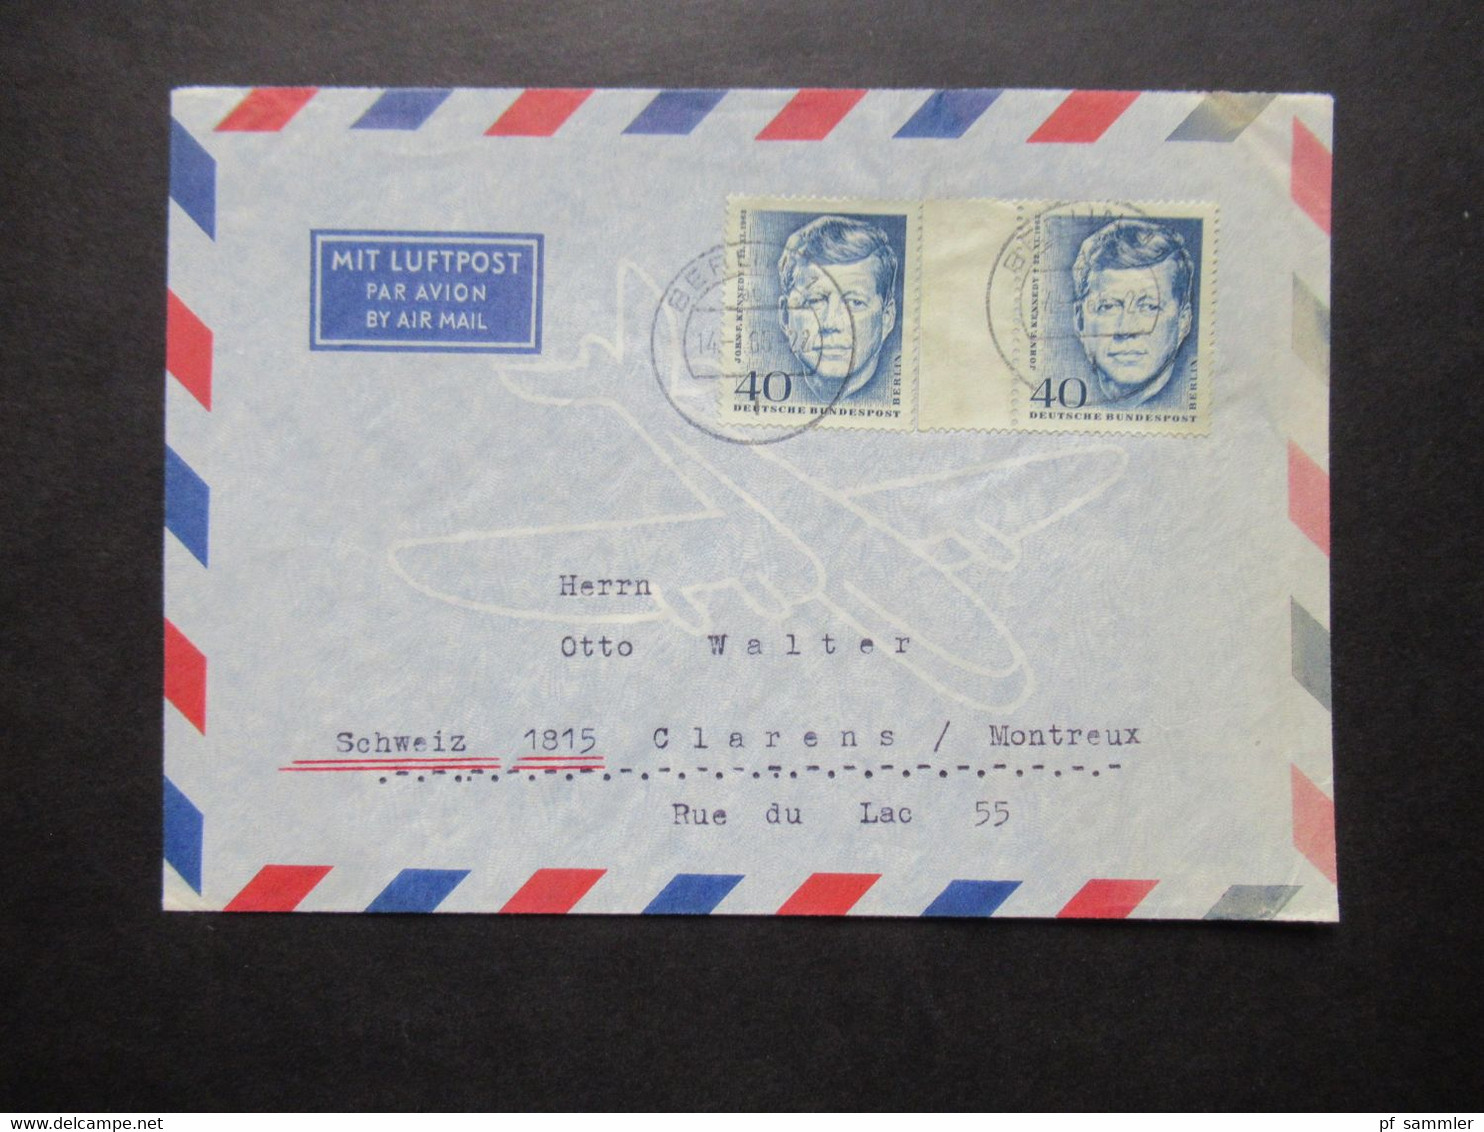 1964 Berlin (West) John F. Kennedy Nr.241 (2) MeF Auslandsbrief Mit Luftpost Berlin - Clarens Montreux Schweiz - Briefe U. Dokumente